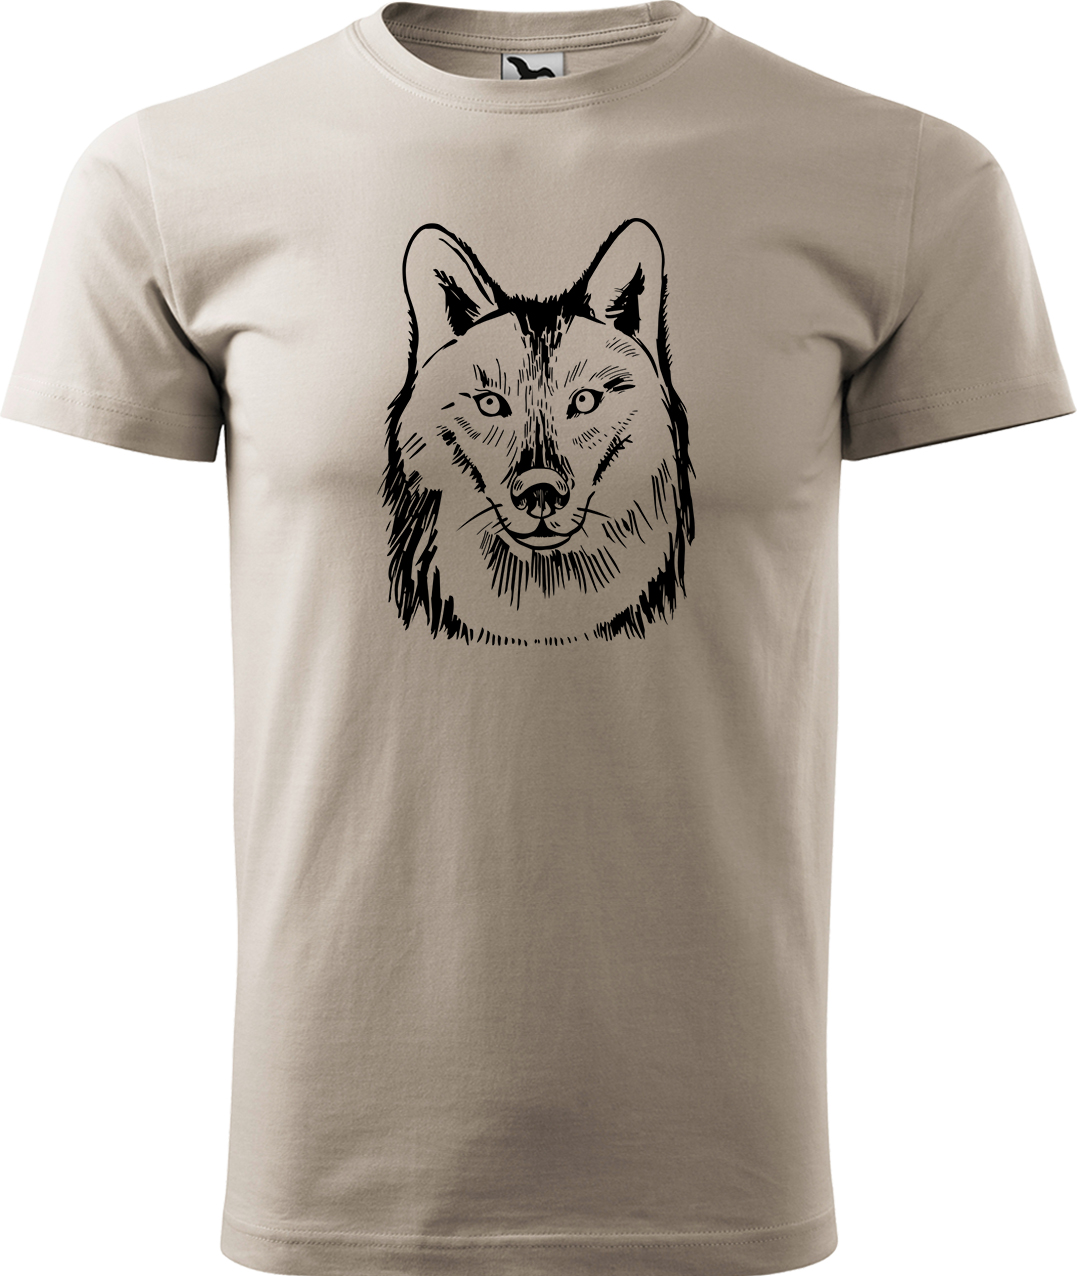 Pánské tričko s vlkem - Kresba vlka Velikost: M, Barva: Béžová (51), Střih: pánský